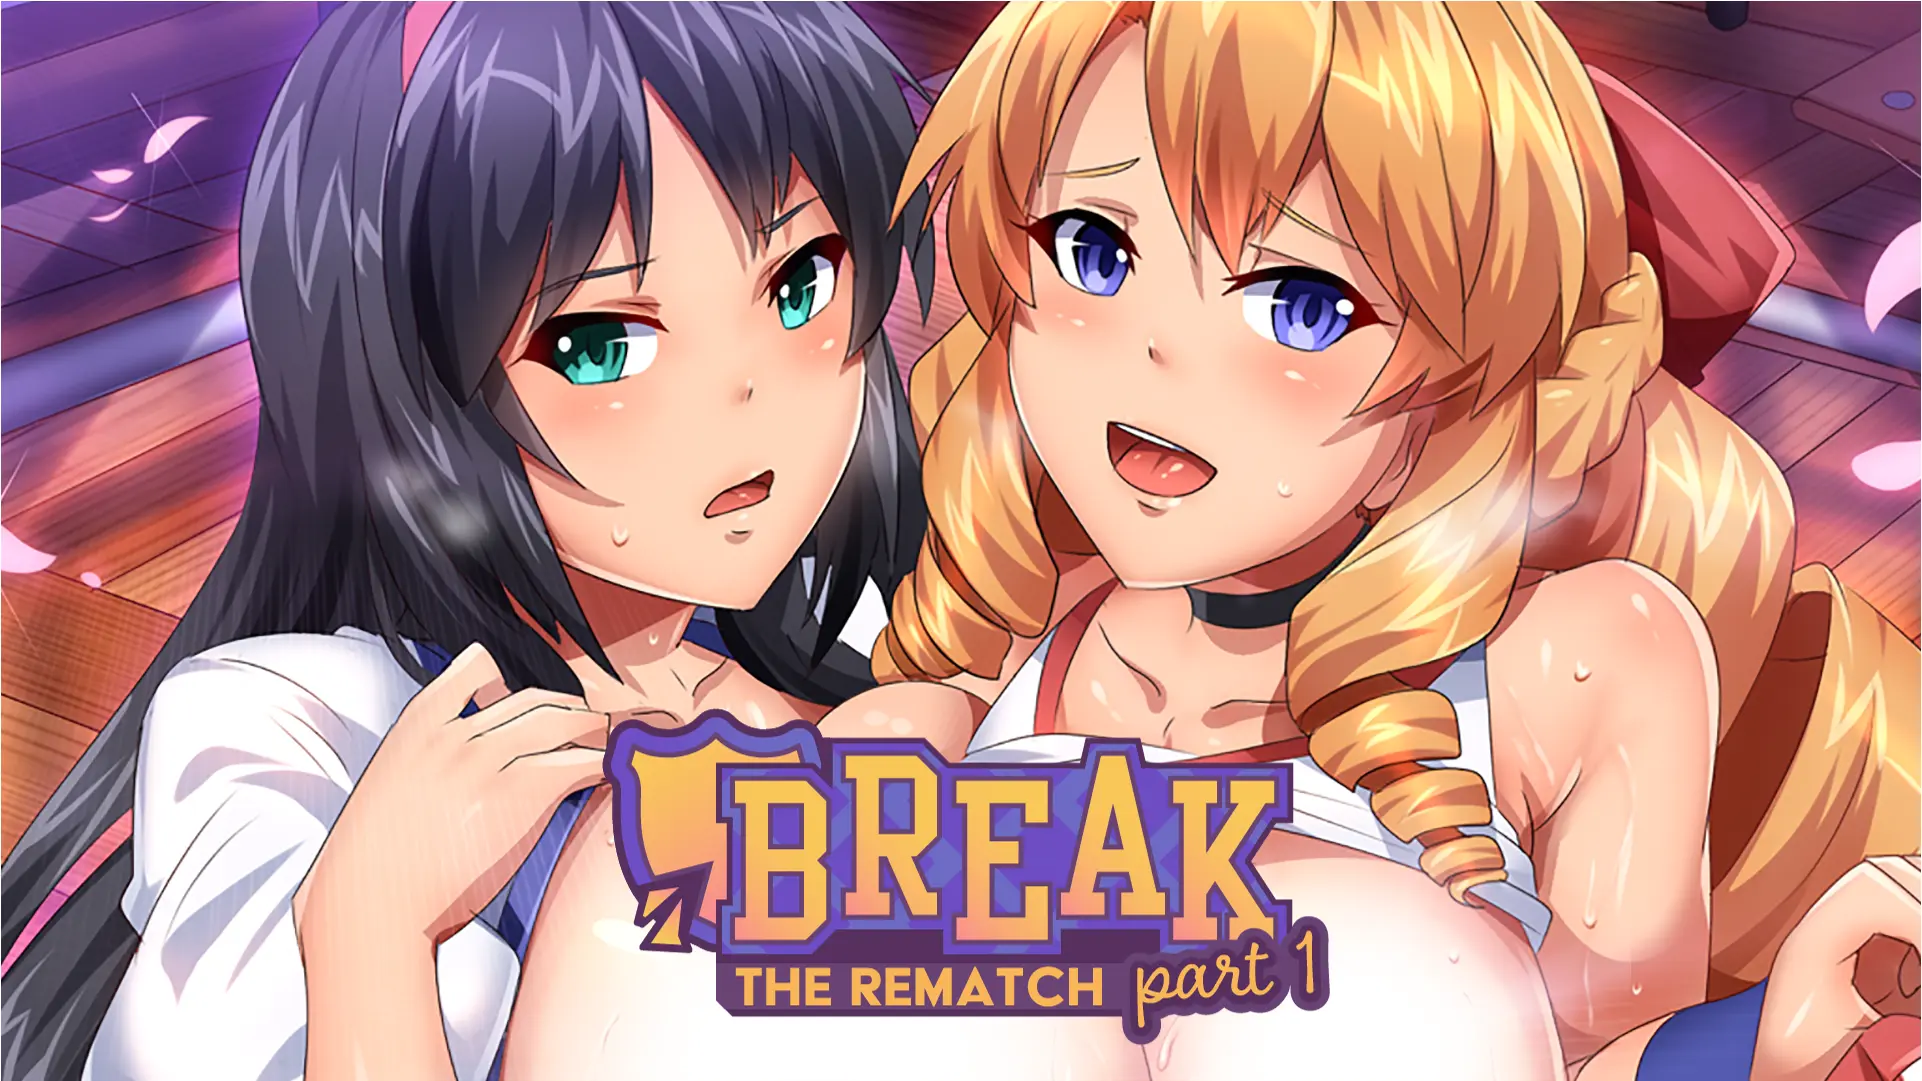 Break! The Rematch Part 2 main image